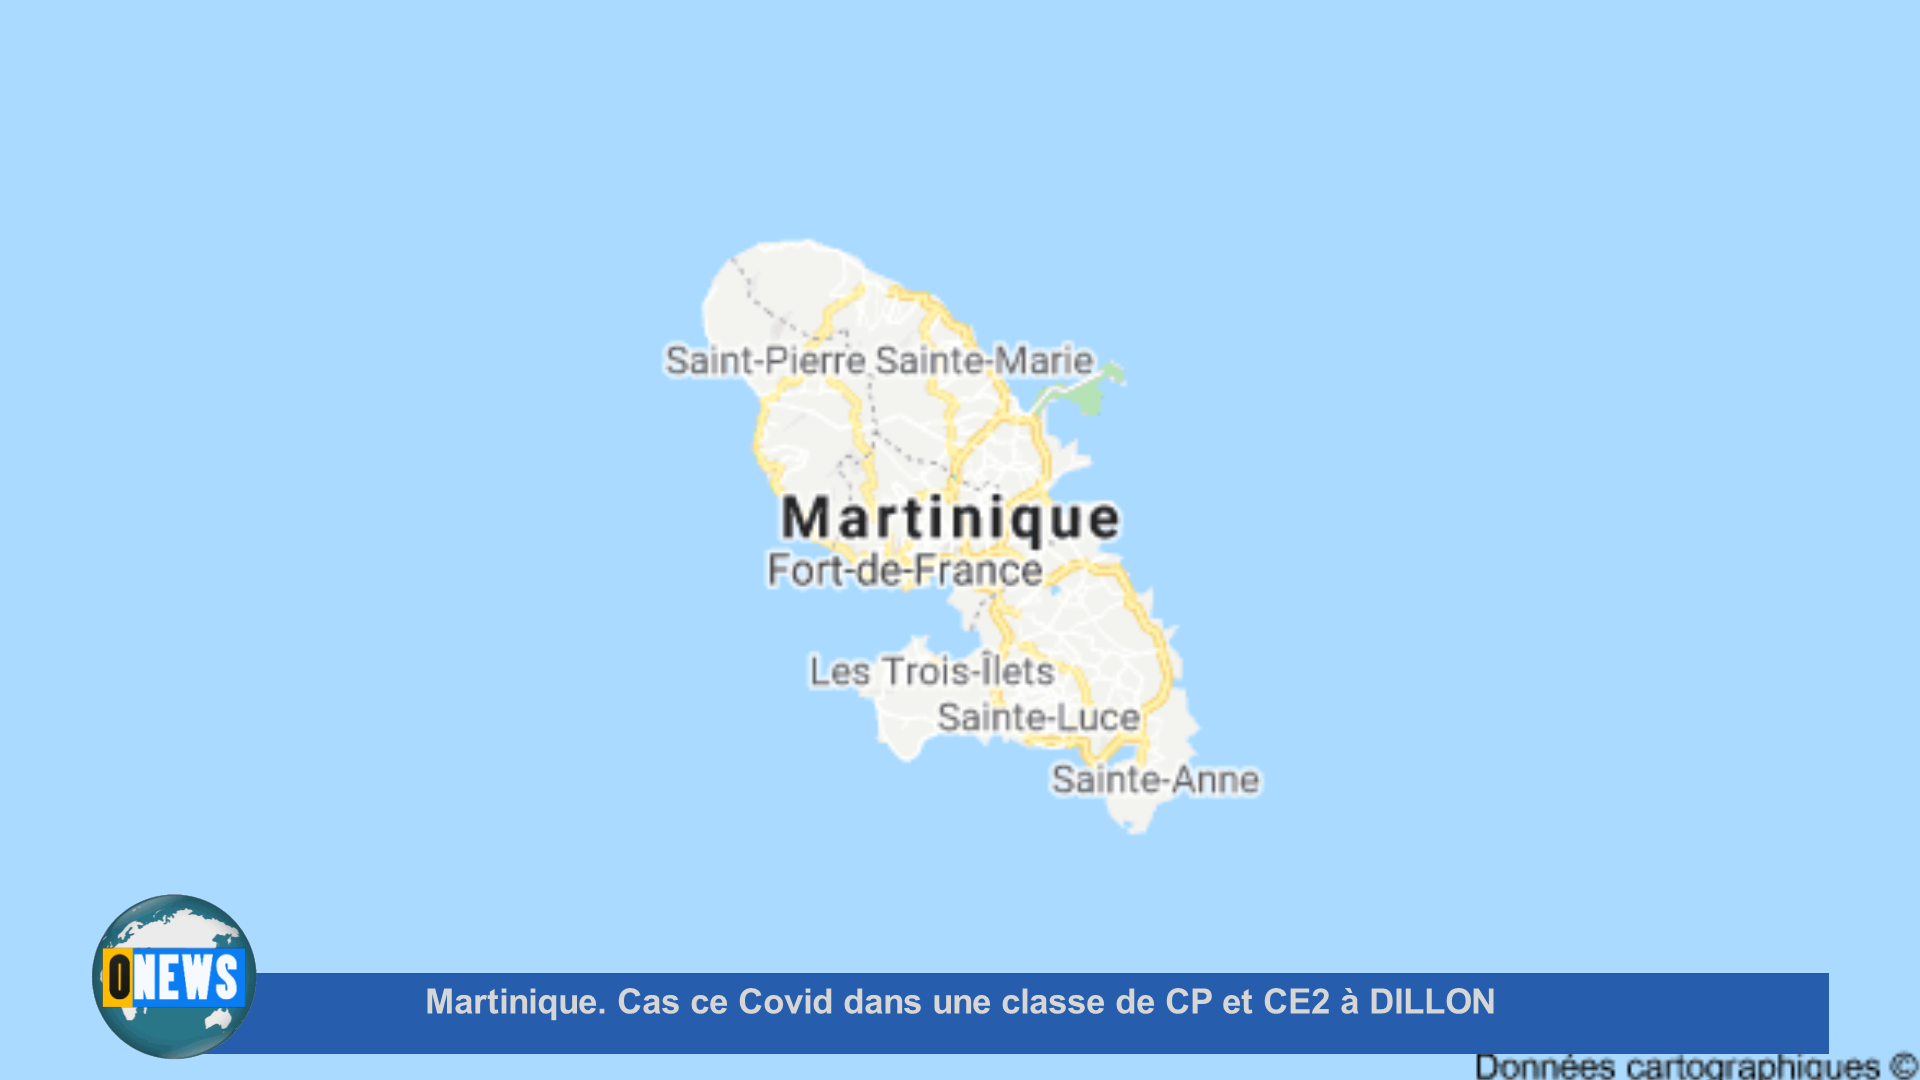 [Vidéo] Onews Martinique. Cas de Covid dans une classe de CP et CE2 à DILLON